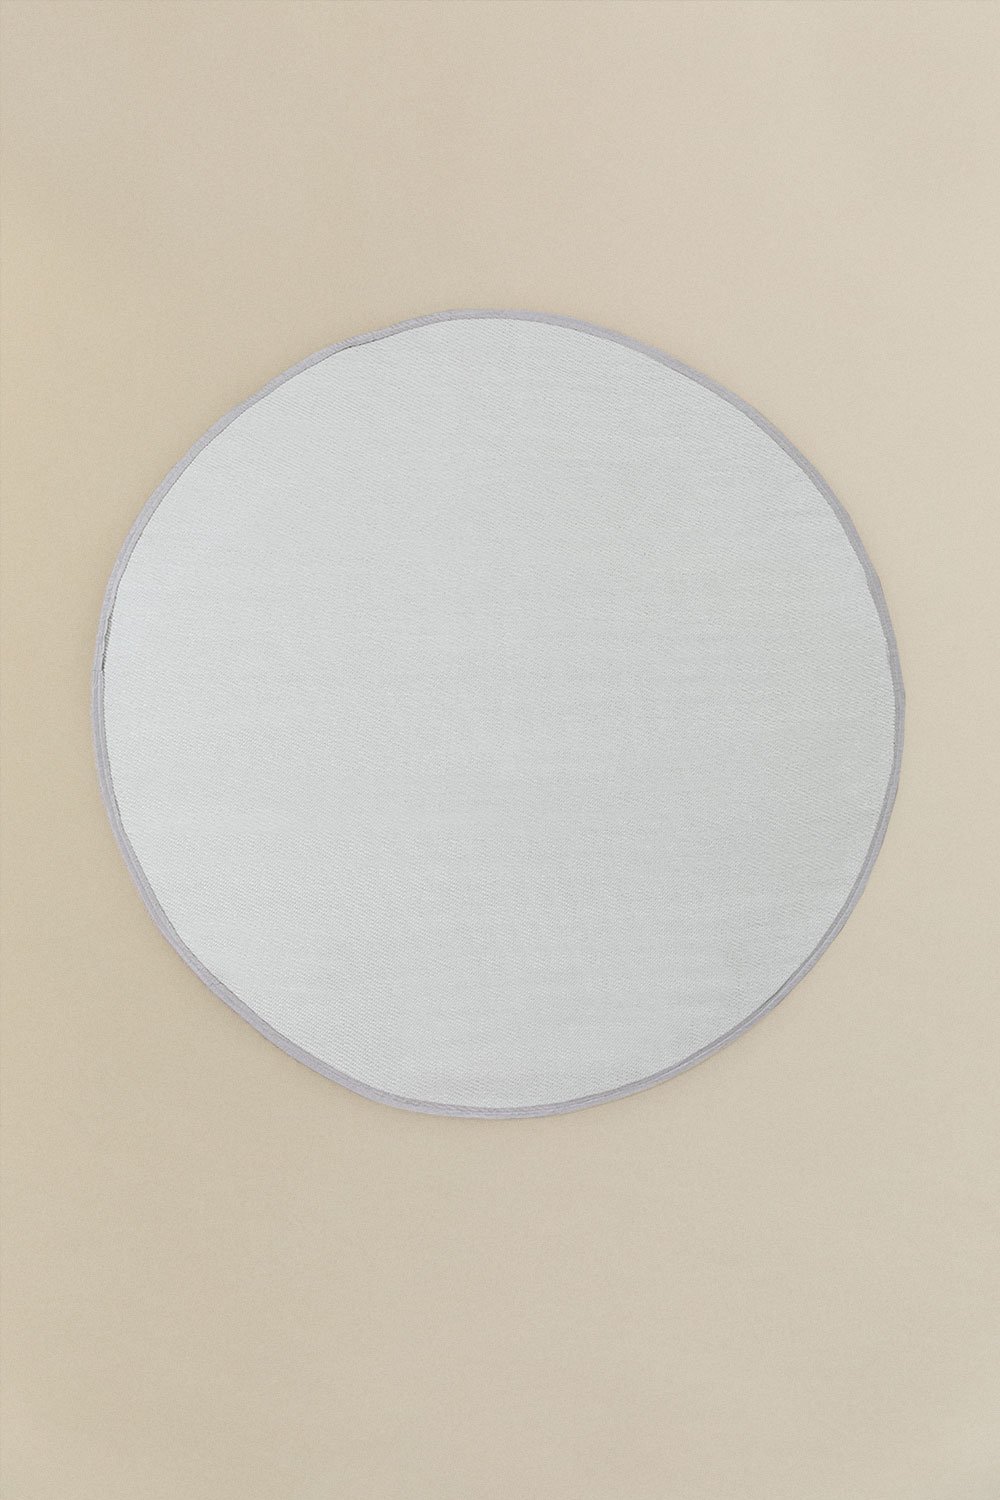 Tapis extérieur rond (Ø170 cm) Tanida, image de la galerie 1